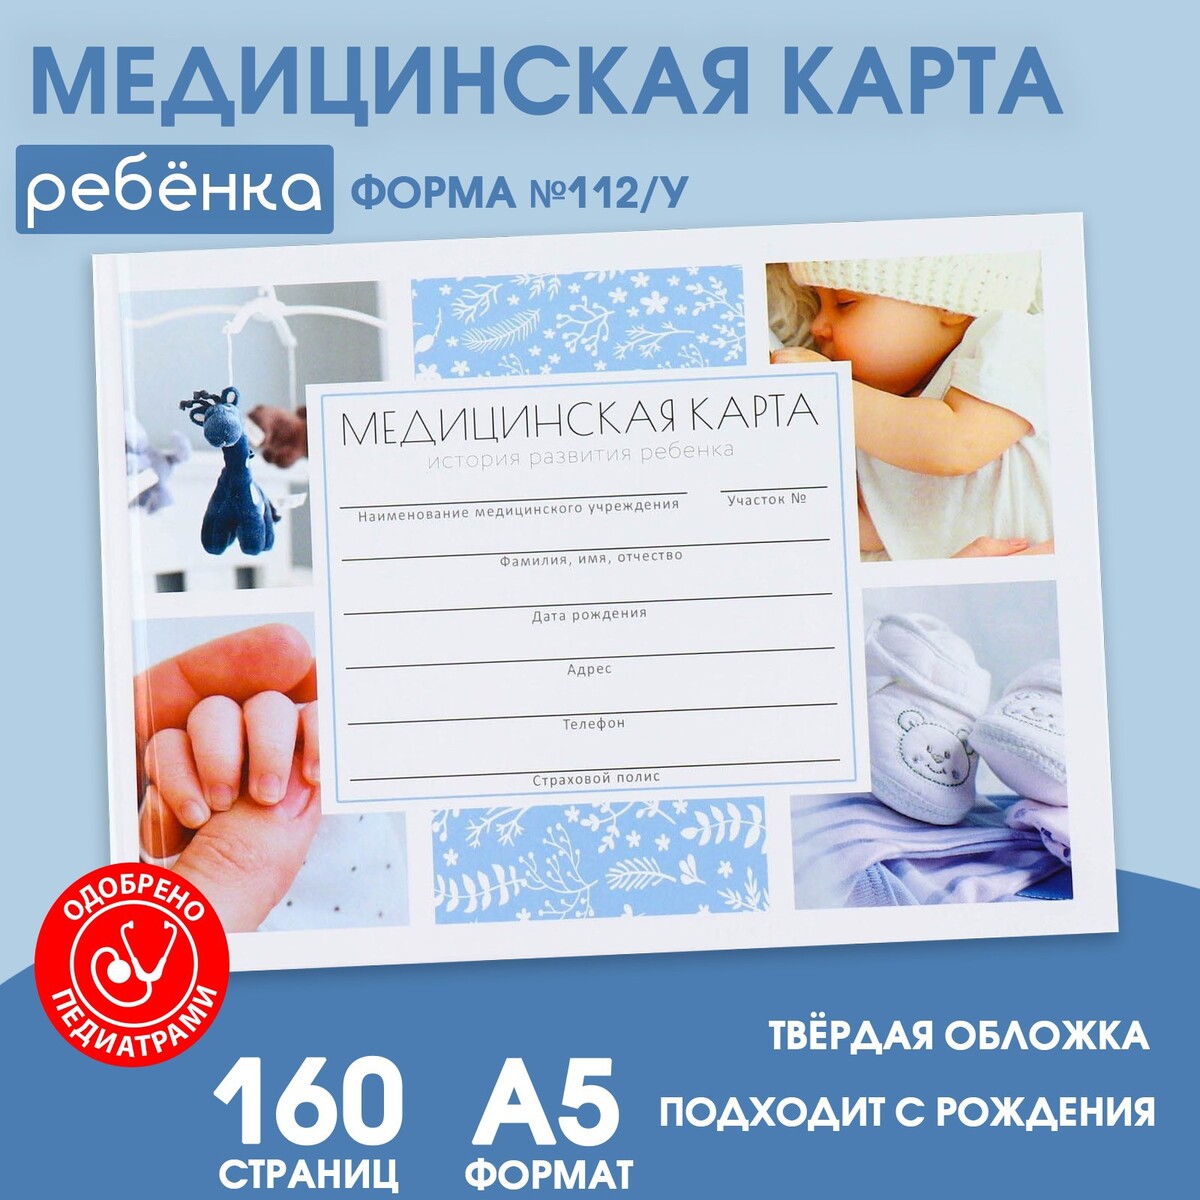 Медицинская карта в твердой обложке форма №112/у медицинская карта ребенка форма 112 у в мягкой обложке